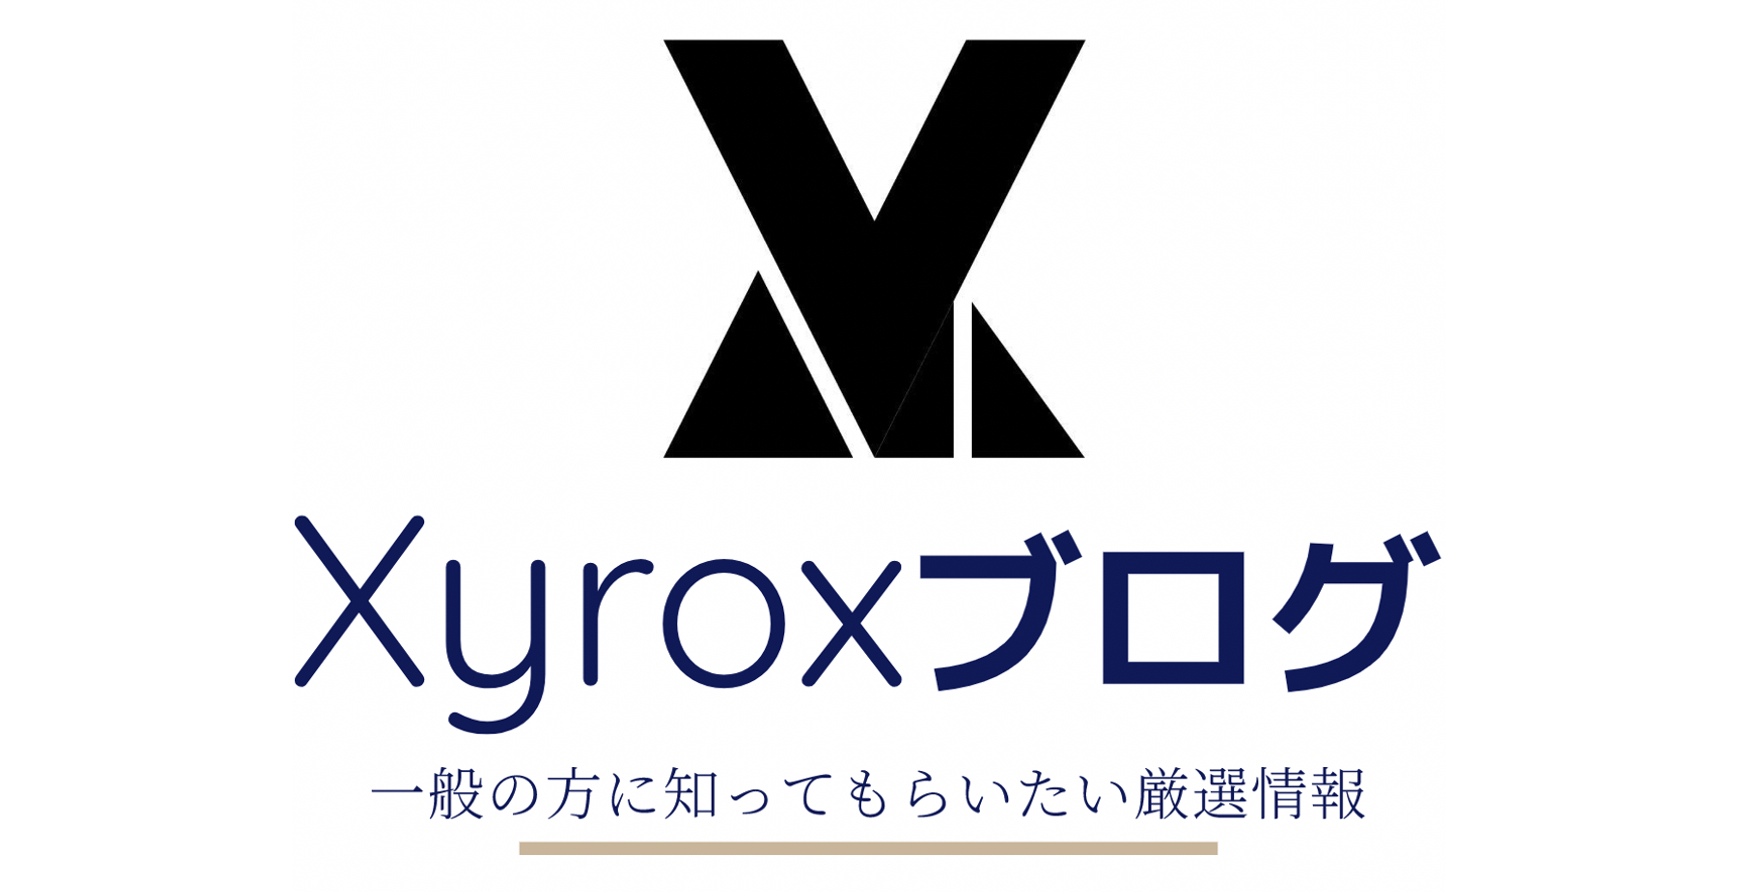 Xyrox Blogs